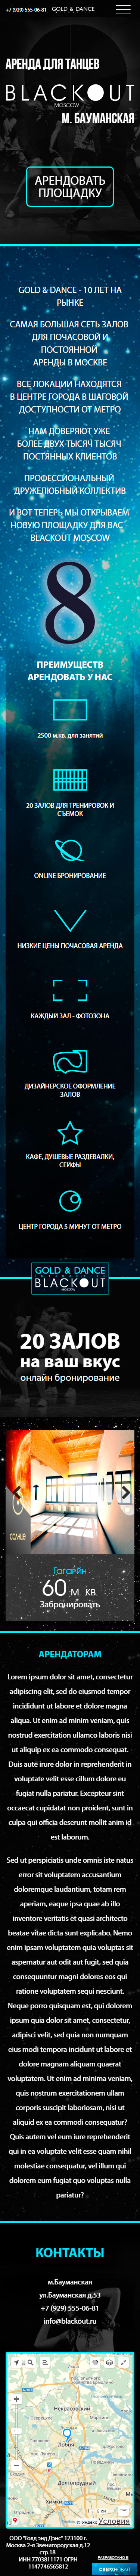 Мобильная версия сайта - площадка для аренды в Москве BlackOut